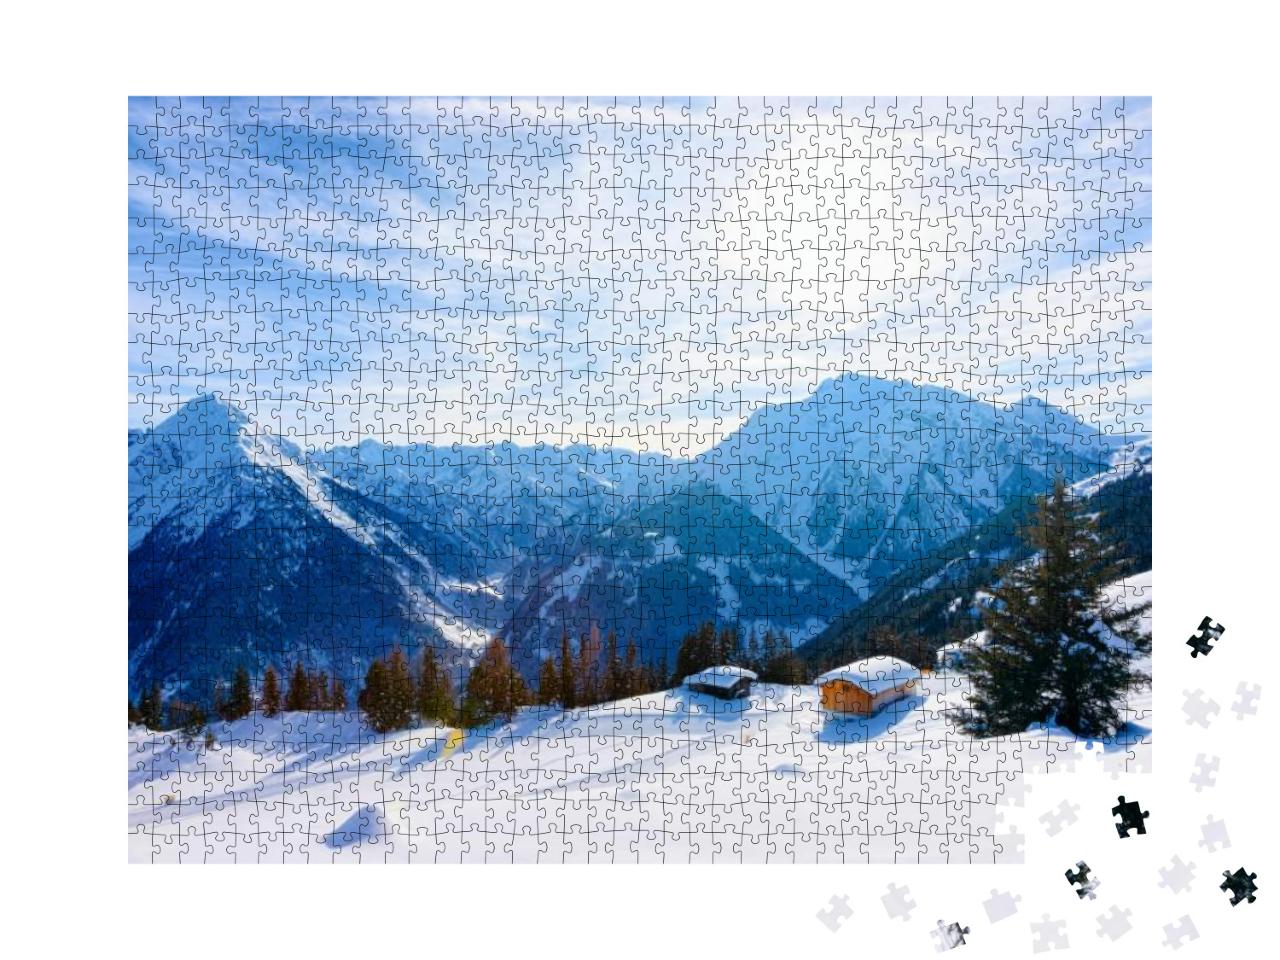 Puzzle 1000 Teile „Skigebiet Mayrhofen mit Chalets im malerischen Zillertal, Tirol, Österreich im Winter“